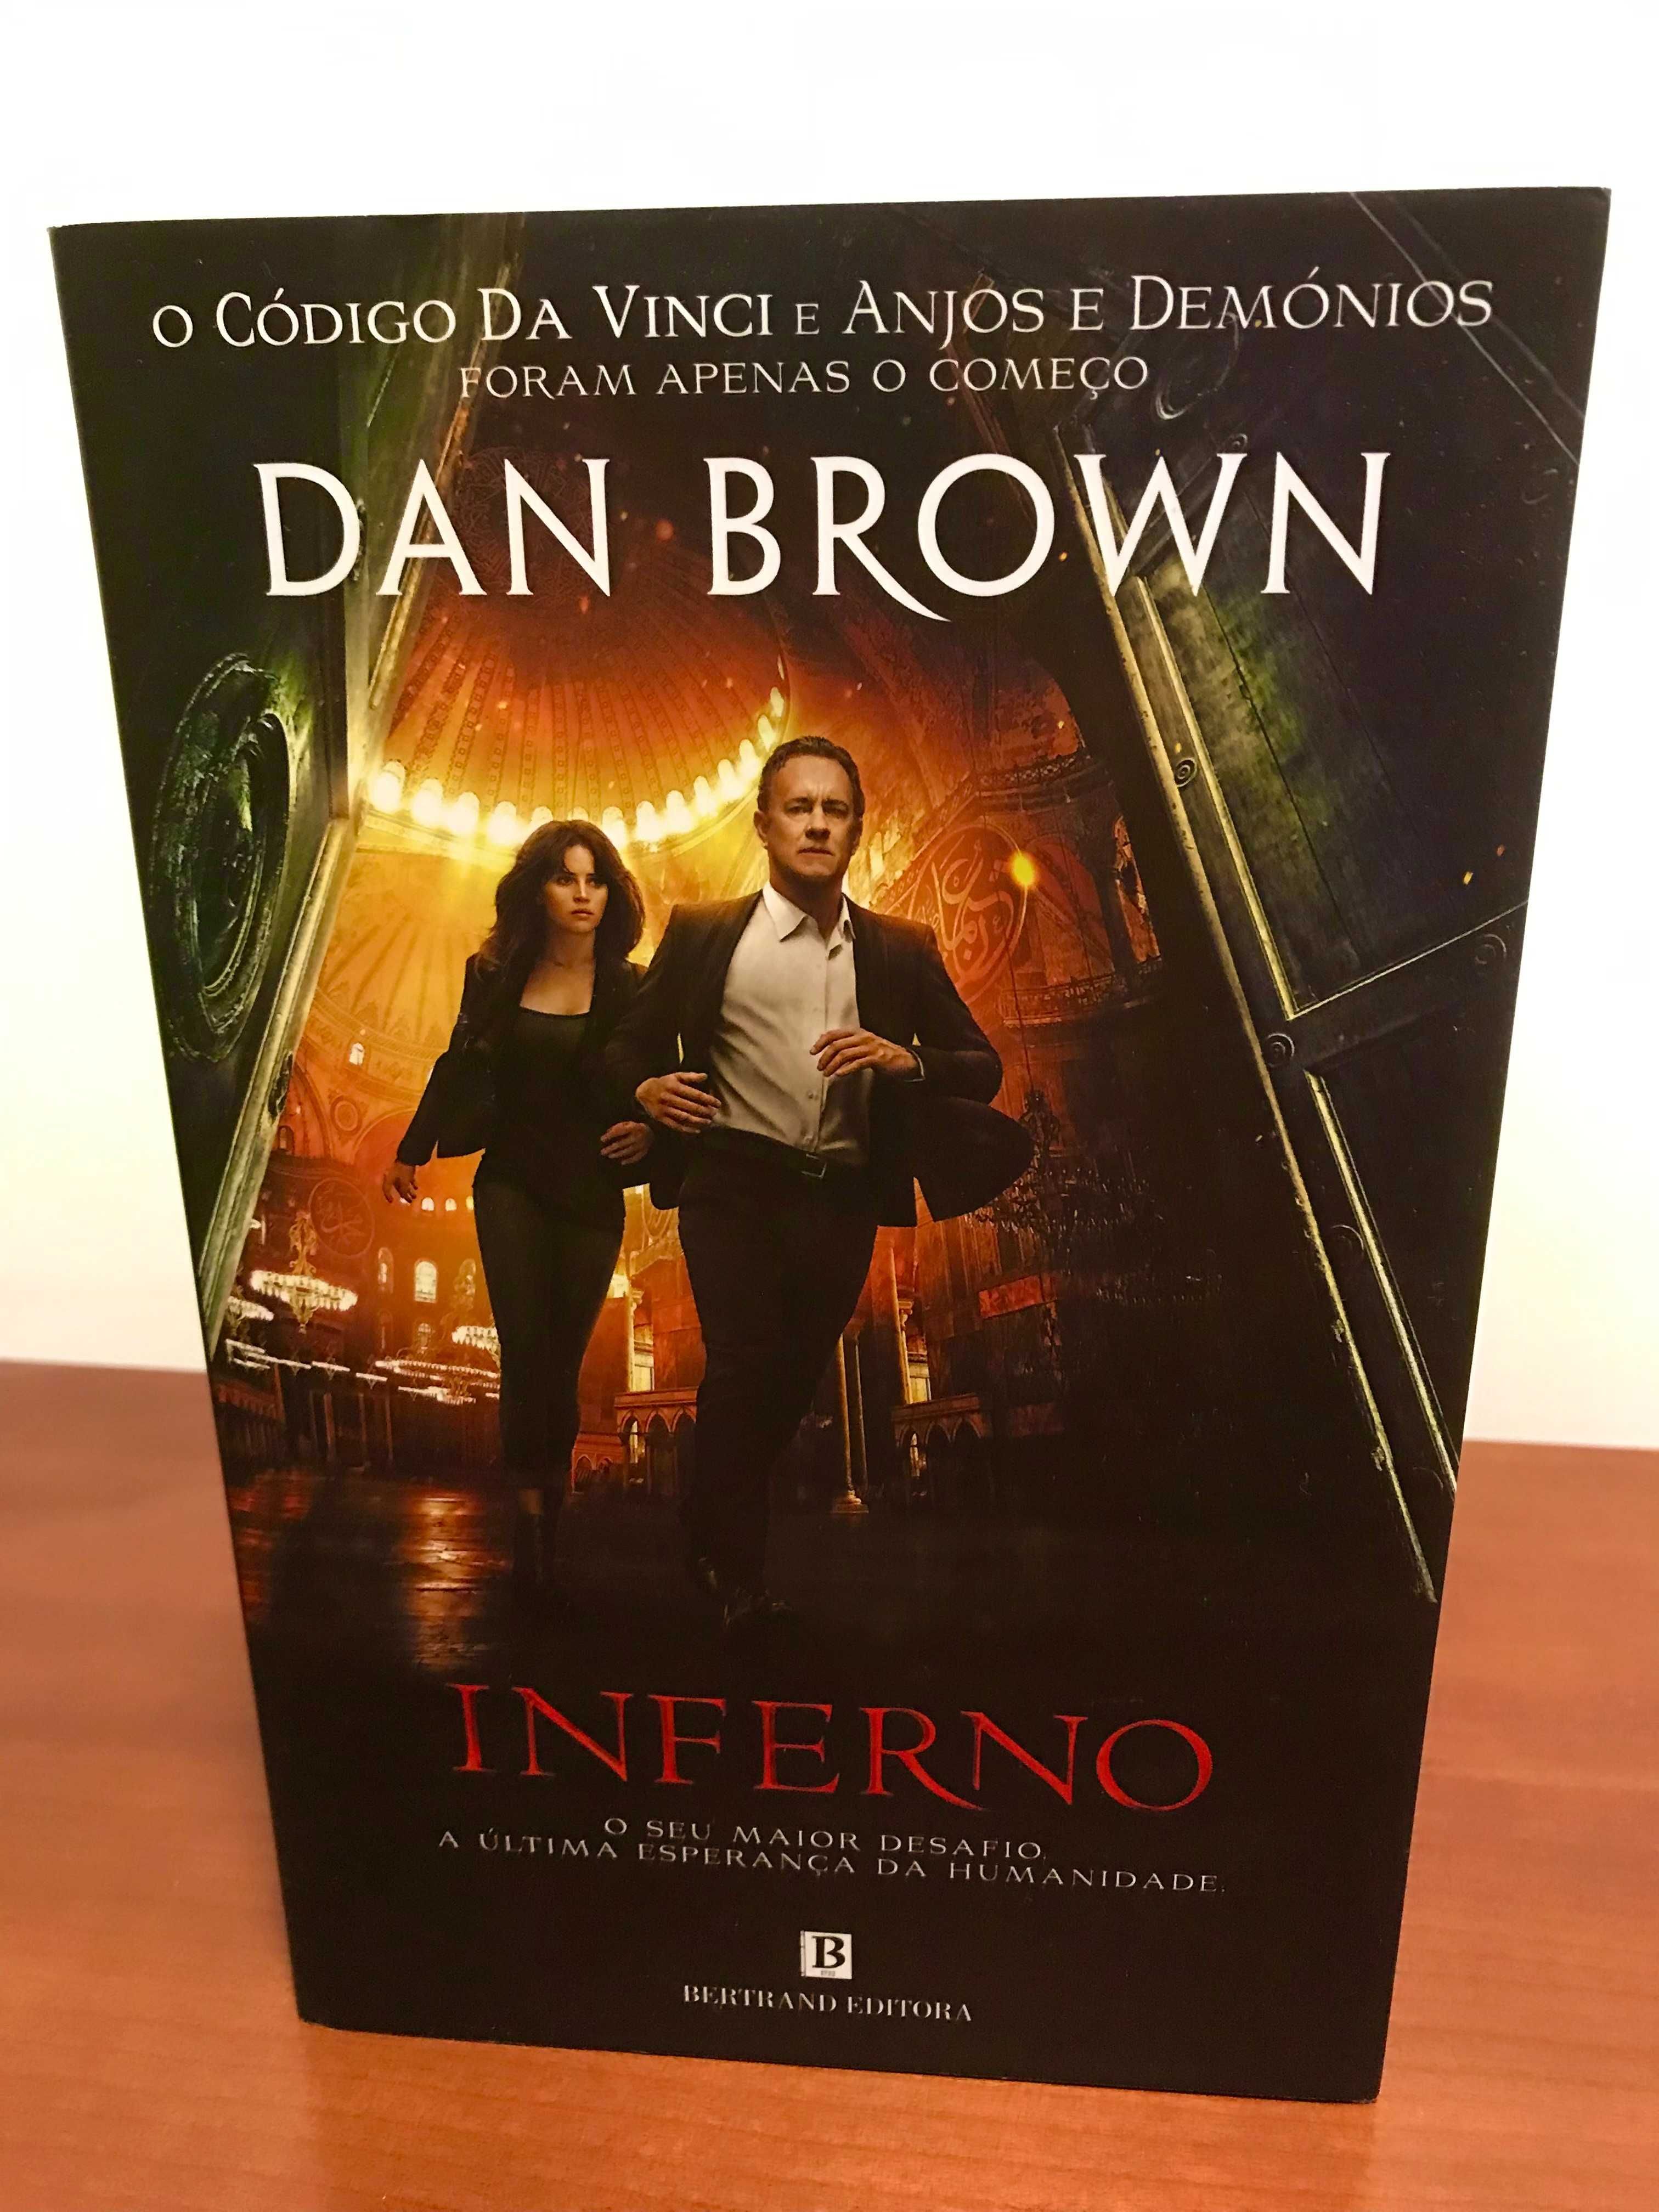 Dan Brown, "Inferno"